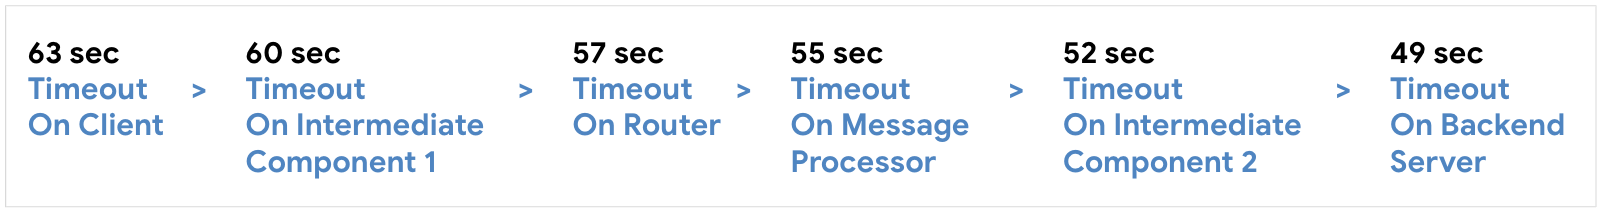 将客户端的超时时间配置为 63 秒，将中间组件 1 配置为 60 秒，接着将路由器配置为 57 秒，然后配置消息处理器 st 55 秒，将中间组件 2 配置为 52 秒，最后将后端服务器配置为 59 秒